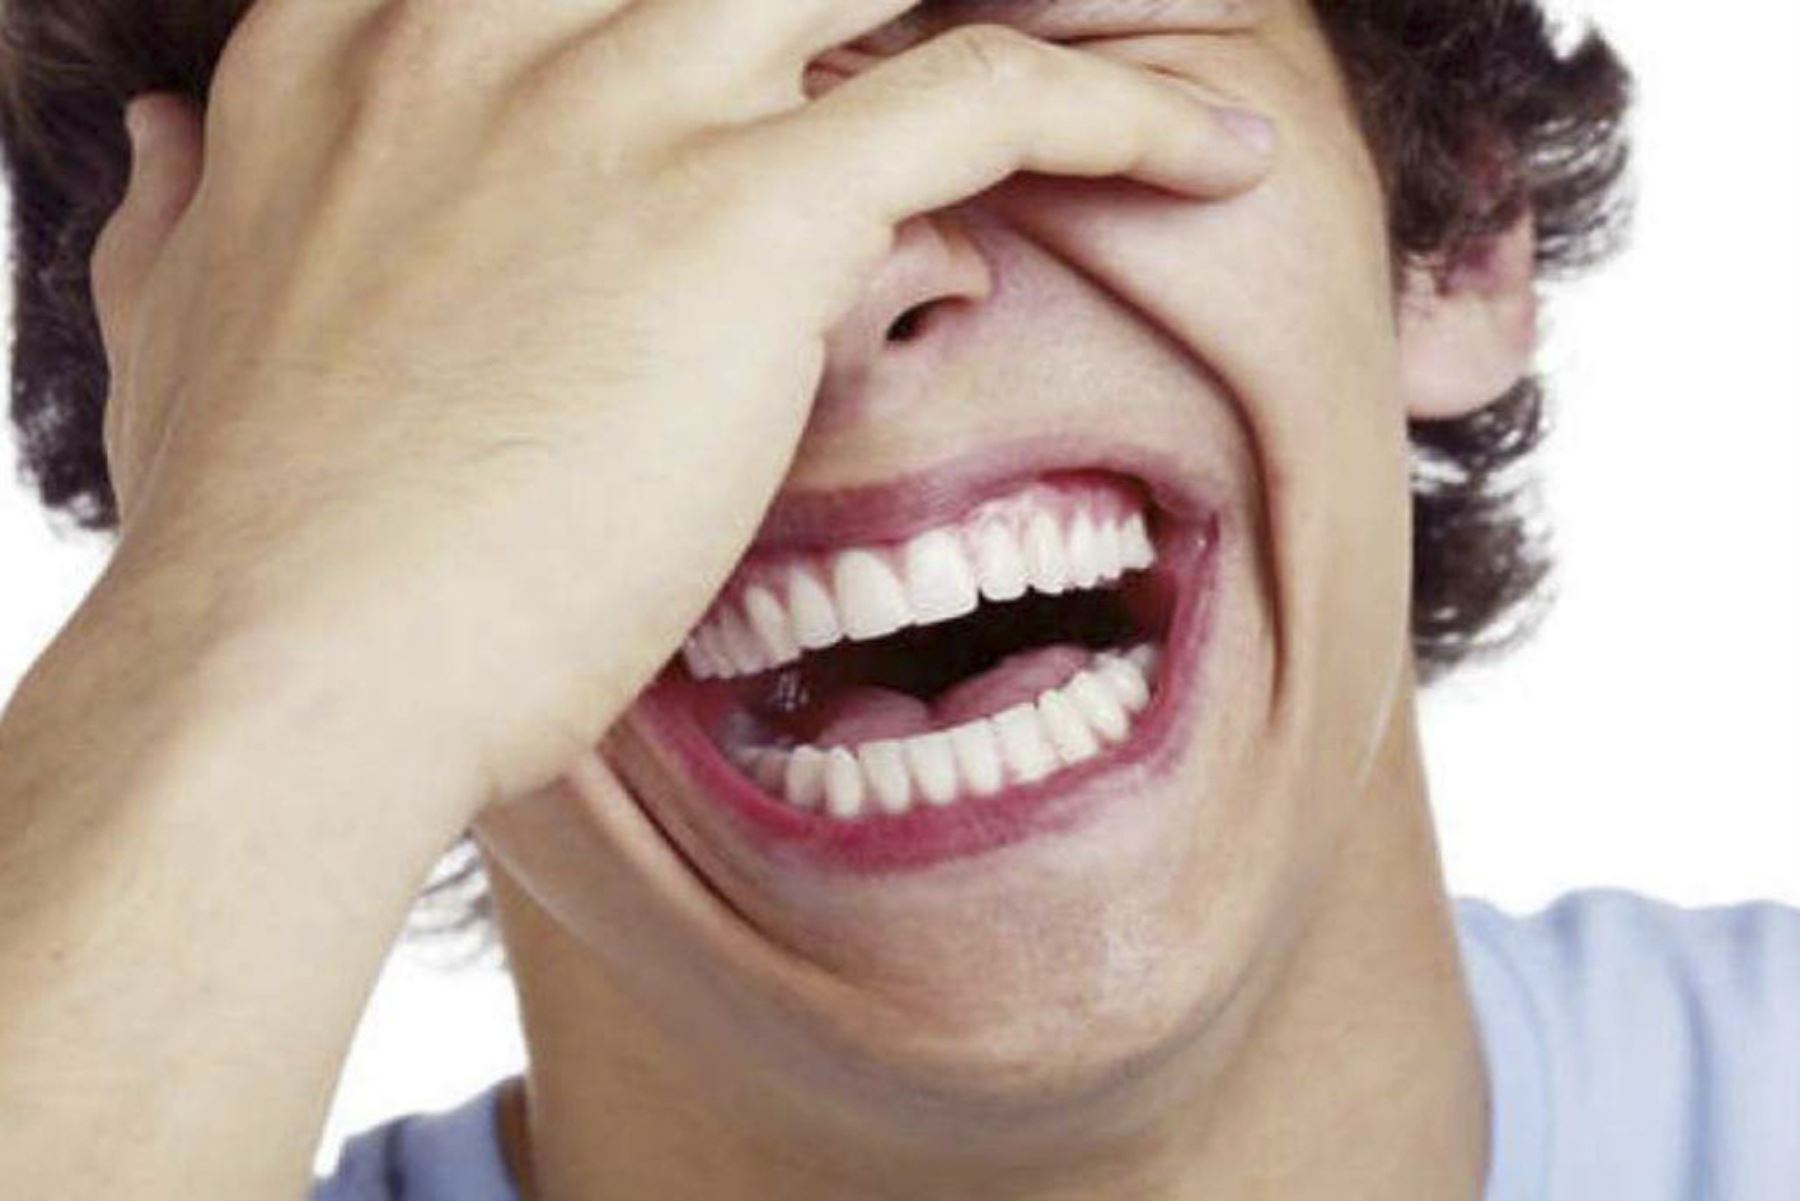 Por sus amplios efectos benéficos en el organismo, la risa ha sido estudiada no solo por la ciencia sino también adoptada como una filosofía de vida por otras culturas orientales. Foto: INTERNET/Medios